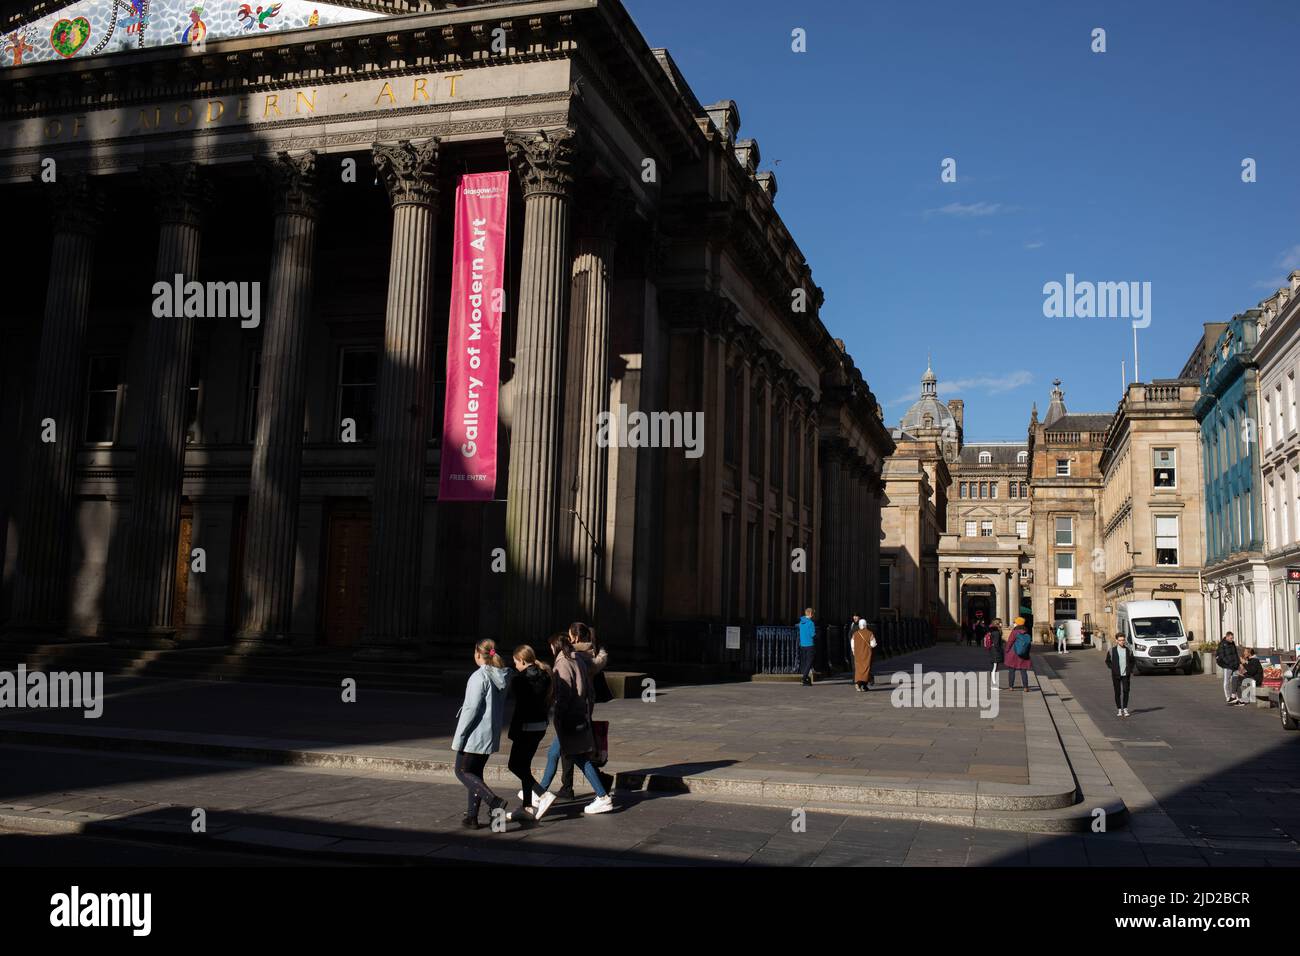 Statue du duc de Wellington avec son chapeau de cornet de police emblématique, devant la Galerie d'art moderne, à Glasgow, Écosse, le 8 avril 2022. N55°51,619' W4°15,123' Banque D'Images